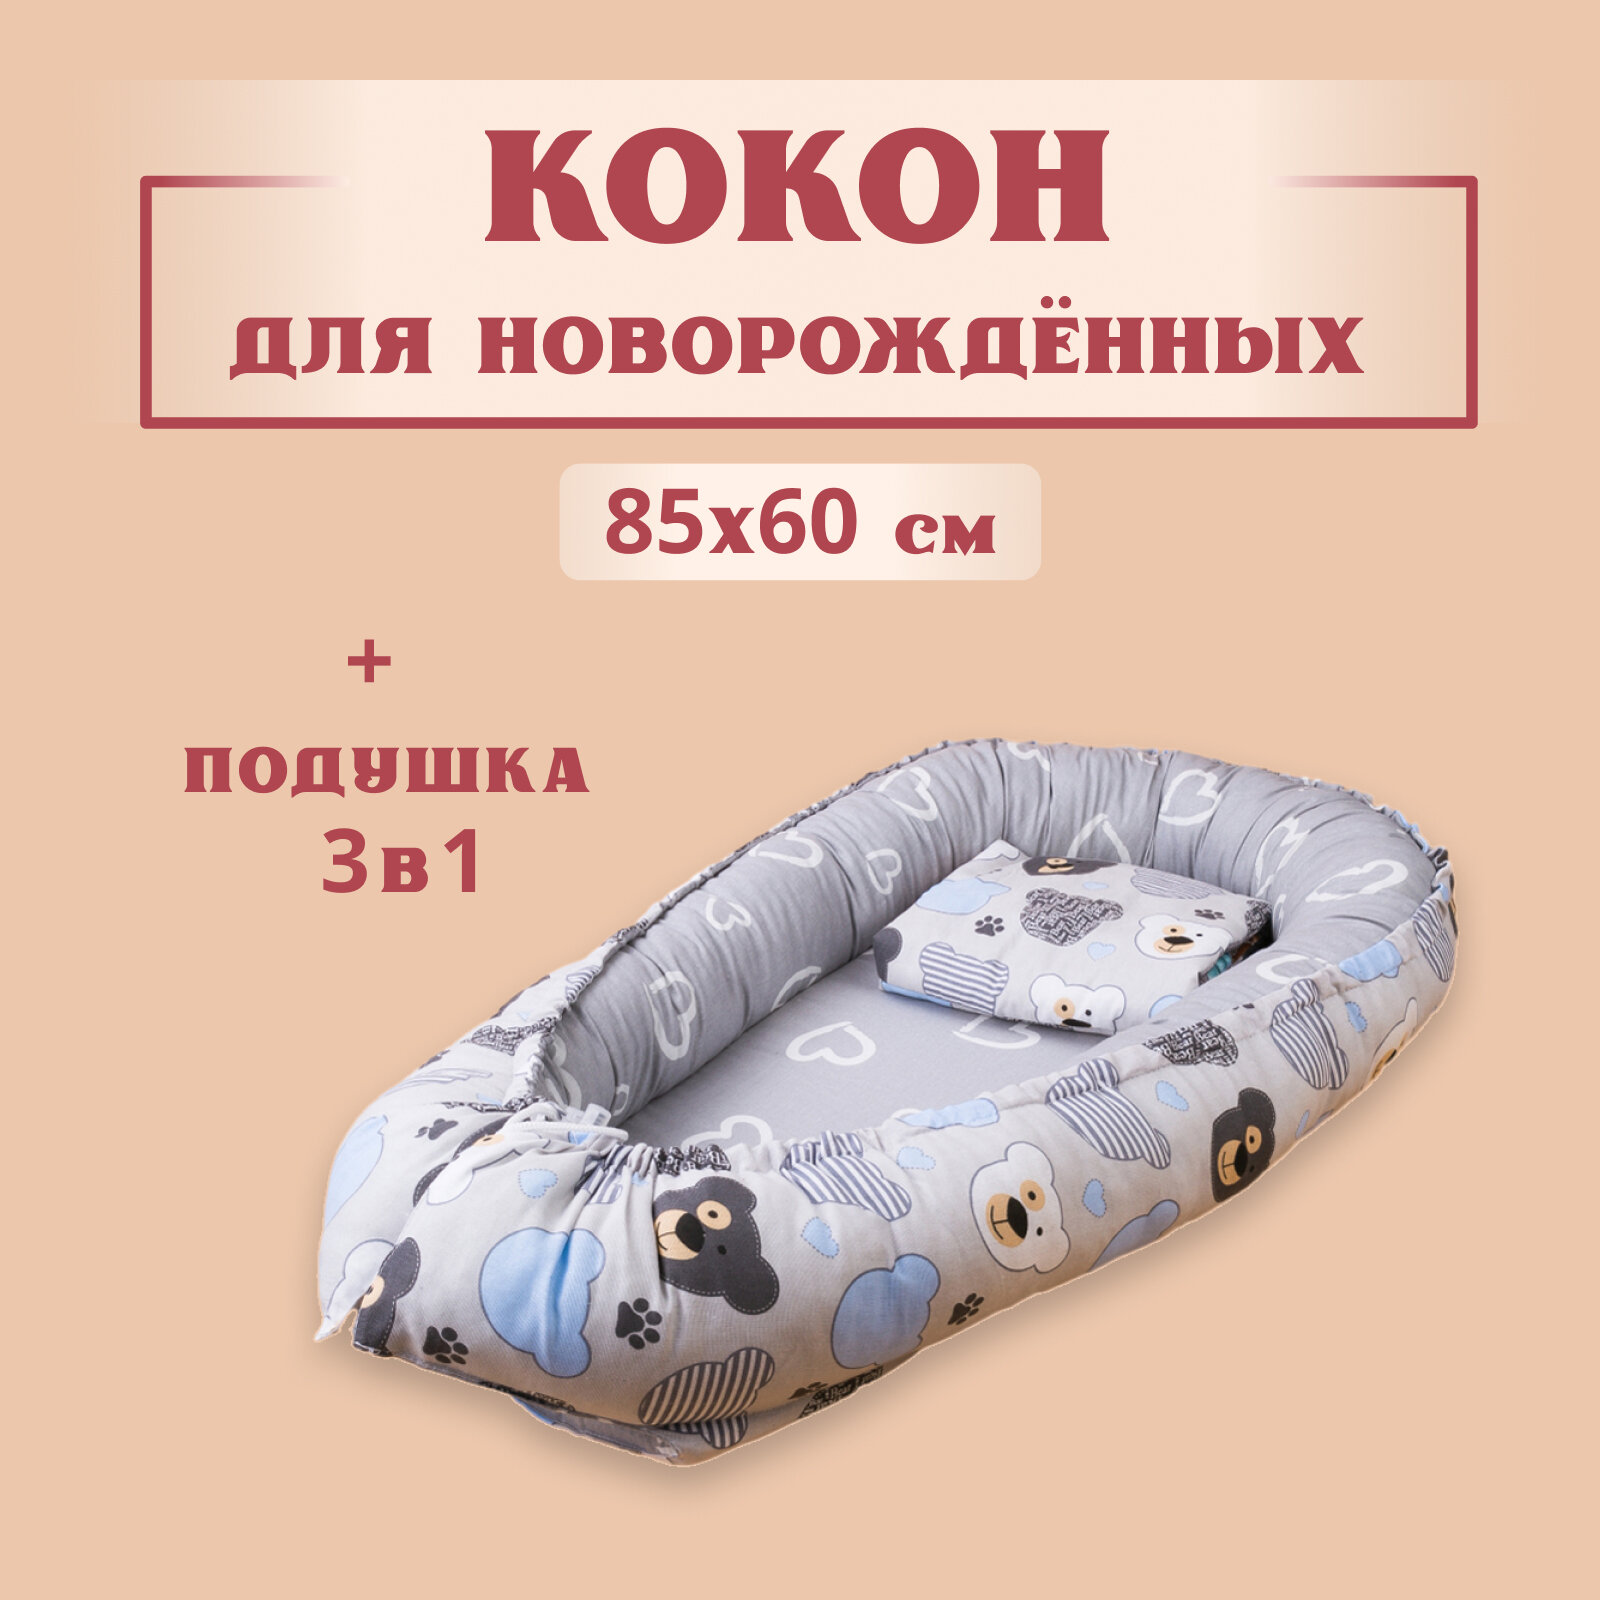 Кокон для новорожденного гнездышко позиционер, 80x60 см, с матрасом, Texxet